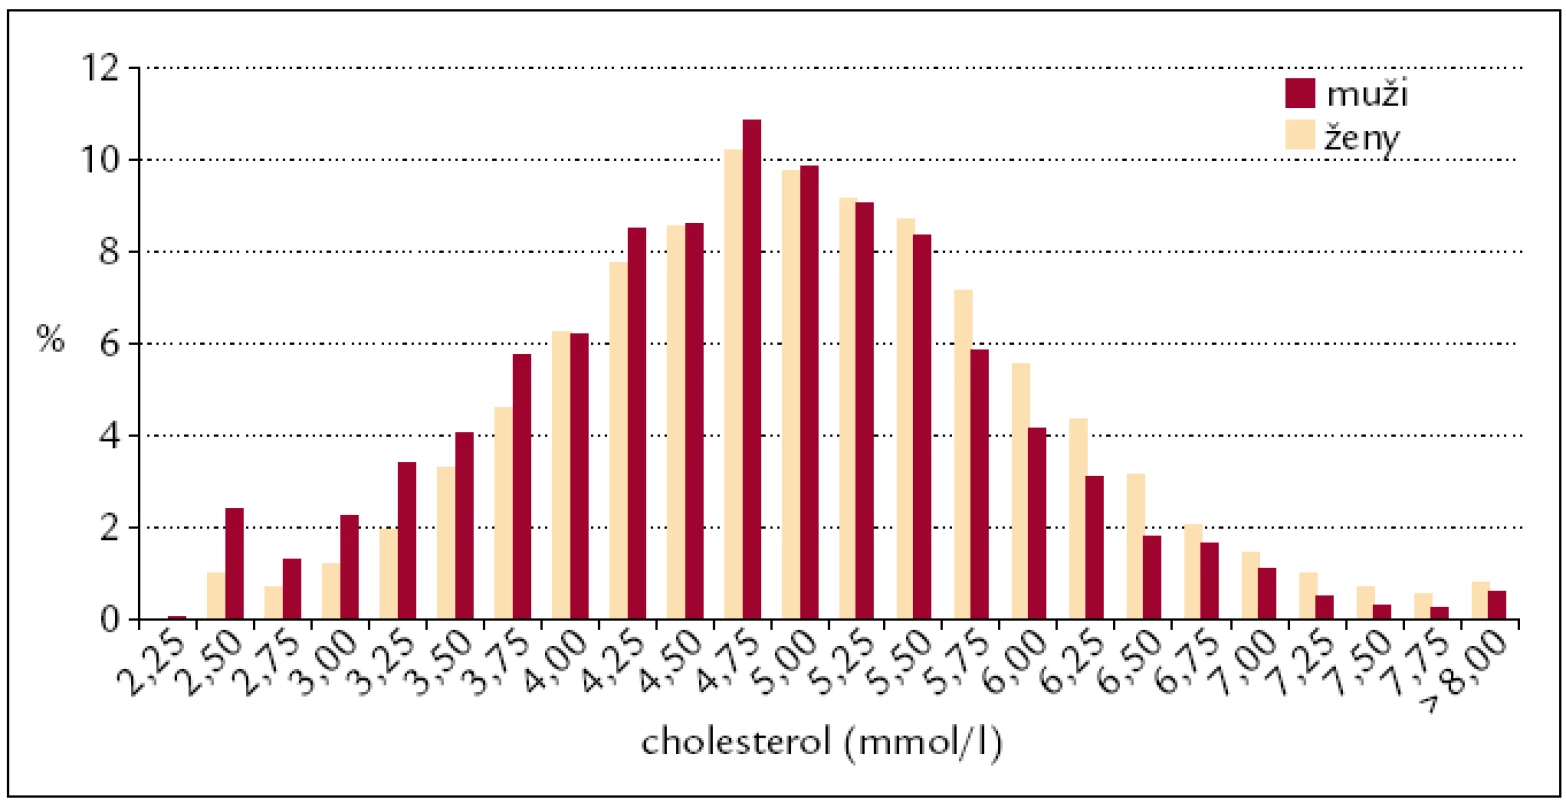 Procentuální zastoupení mužů a žen podle hodnot cholesterolu.